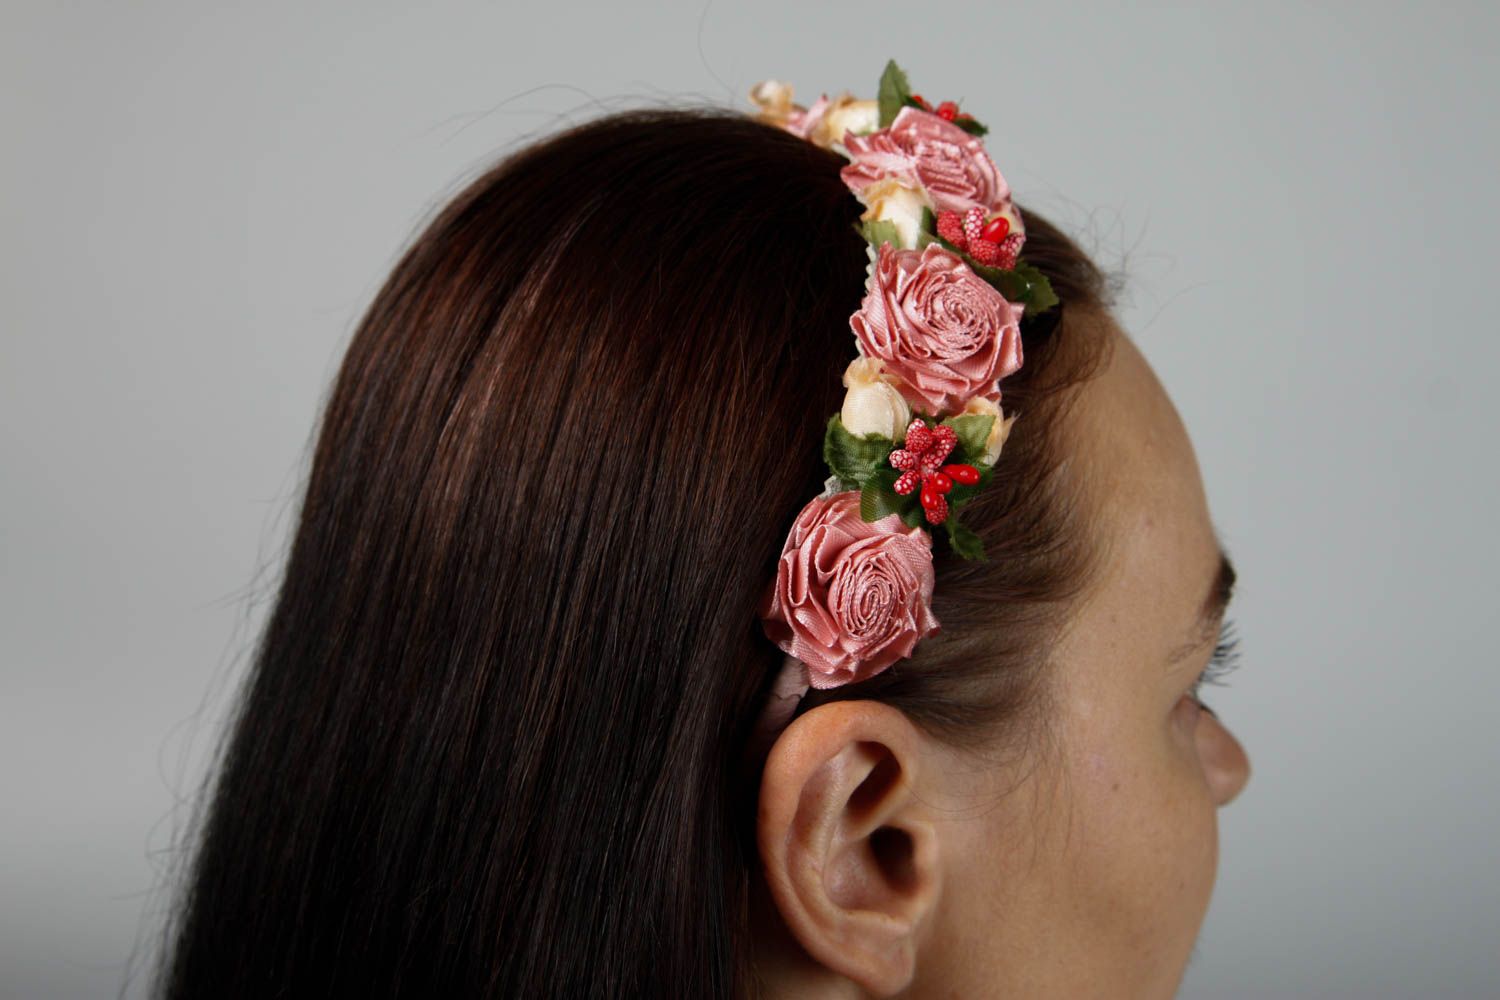 Аксессуар для волос ручной работы женский аксессуар обруч на голову с цветами фото 2